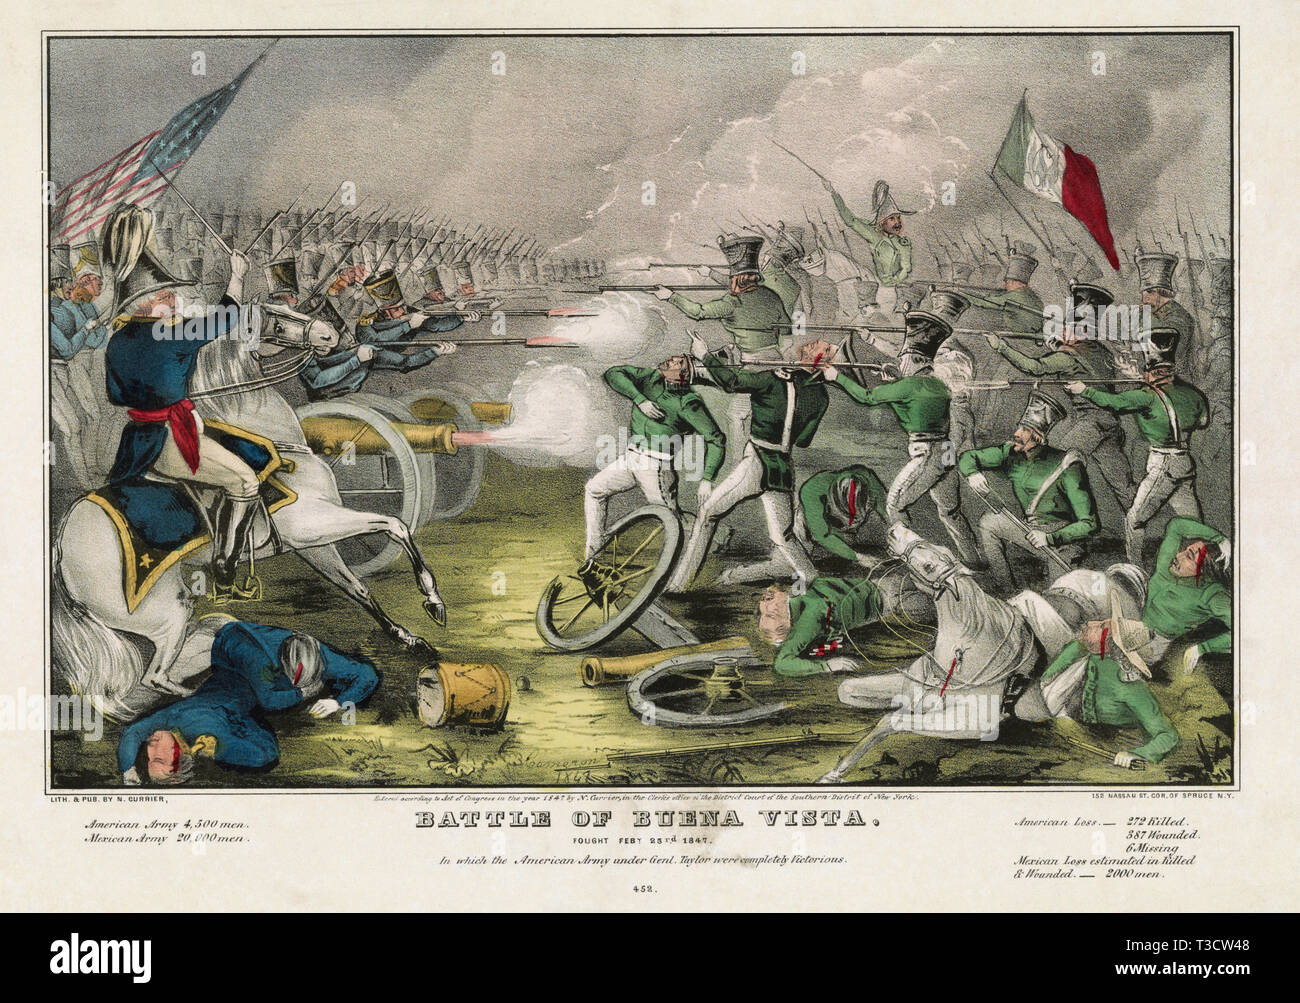 Bataille de Buena Vista, ont combattu le 23 février 1847 - dans lequel l'Armée américaine du général Taylor étaient complètement victorieux, lithographie, Nathaniel Currier, 1847 Banque D'Images